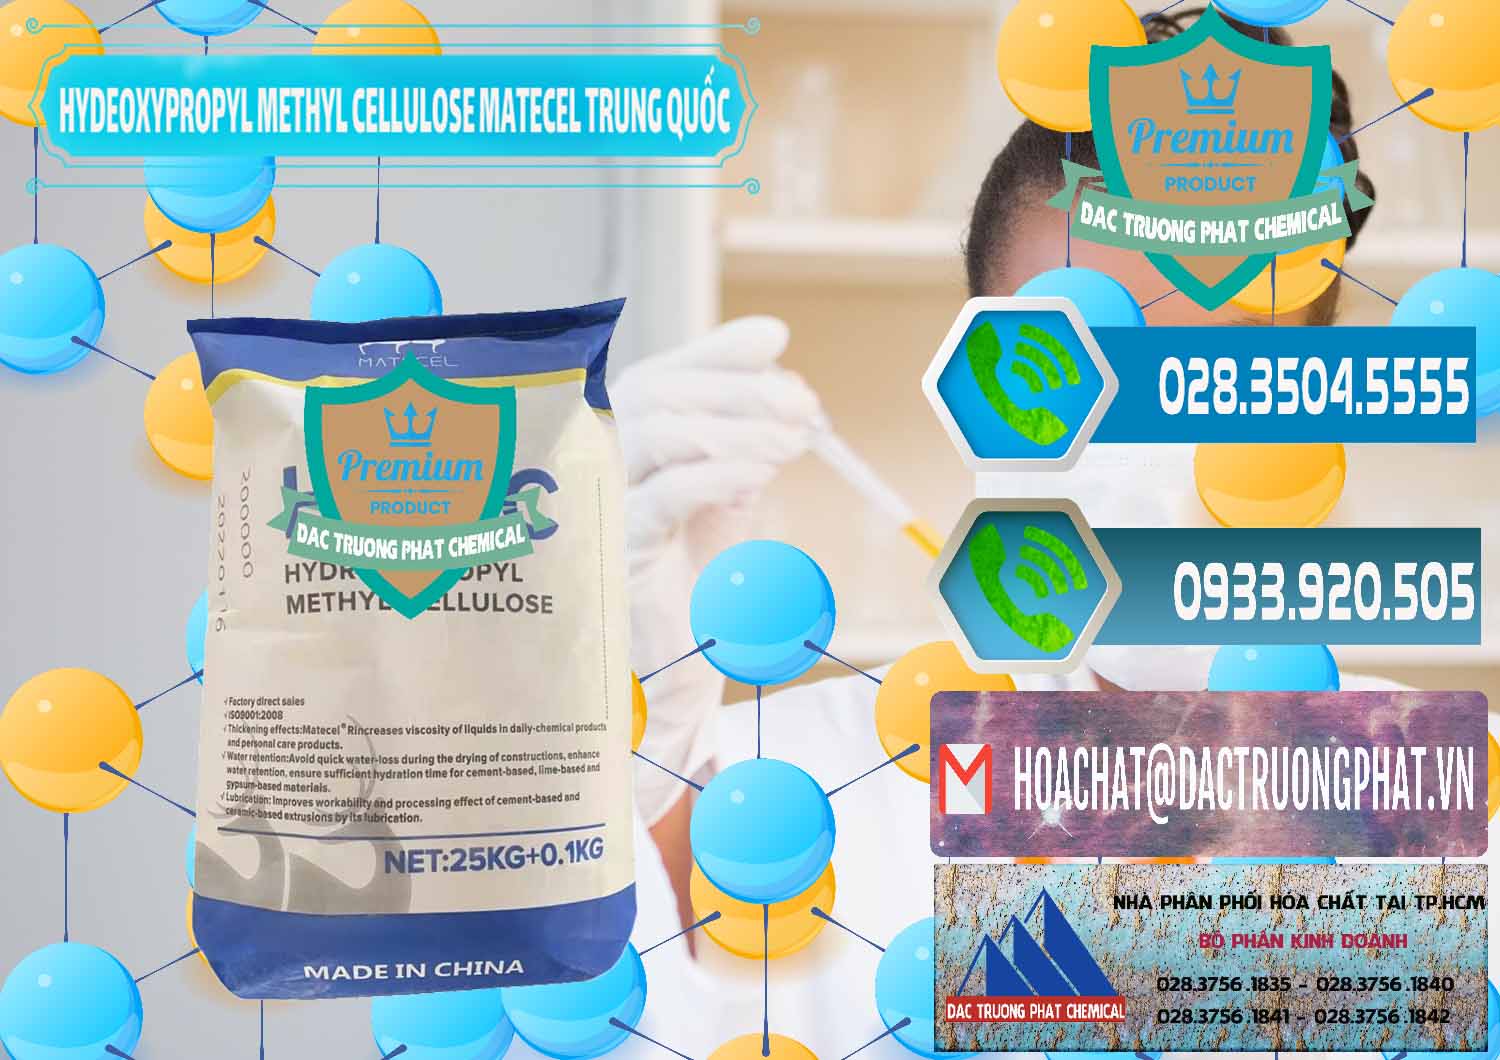 Đơn vị nhập khẩu _ bán Chất Tạo Đặc HPMC - Hydroxypropyl Methyl Cellulose Matecel Trung Quốc China - 0396 - Nhà cung cấp ( nhập khẩu ) hóa chất tại TP.HCM - congtyhoachat.net